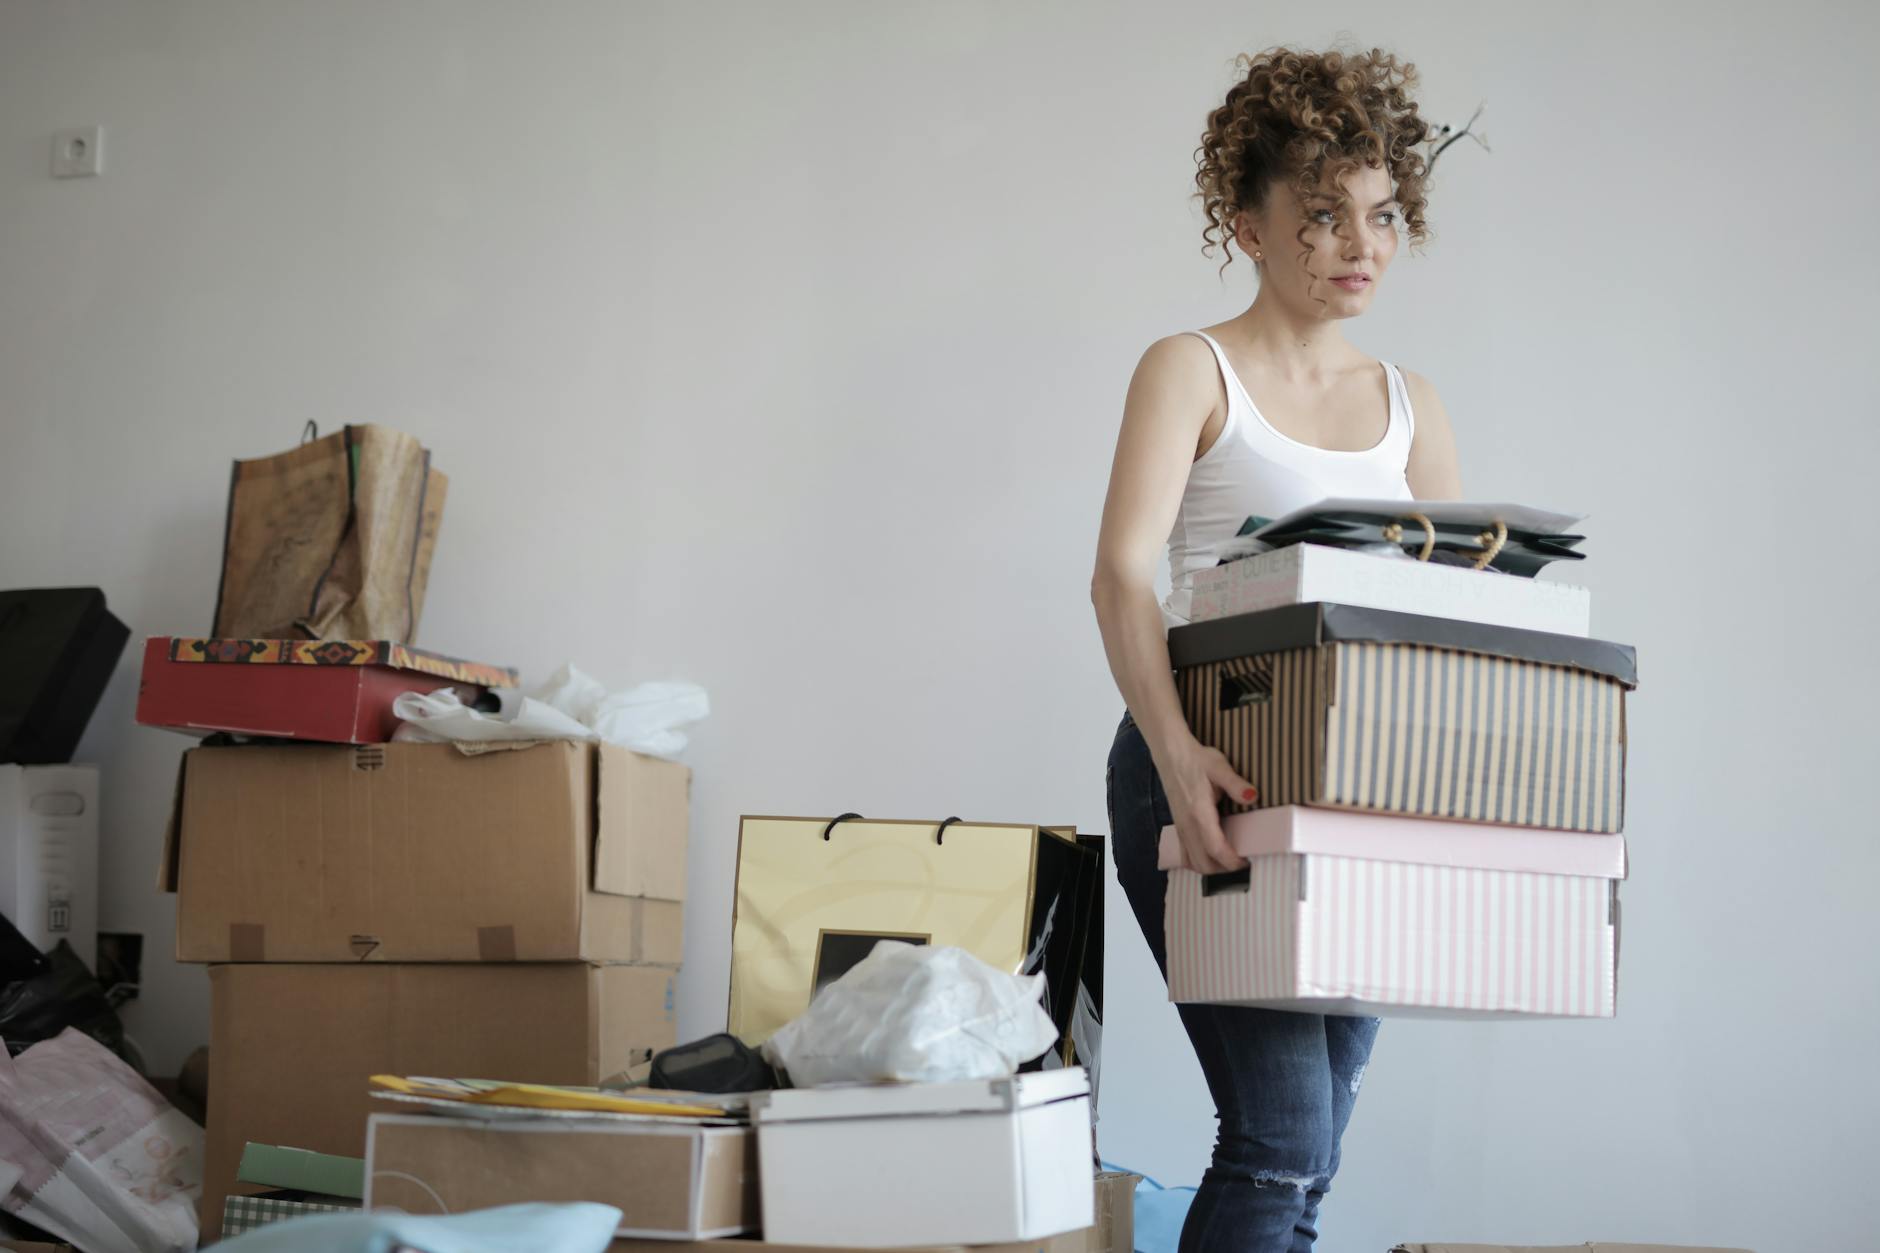 断捨離
concentrated woman carrying stack of cardboard boxes for relocation